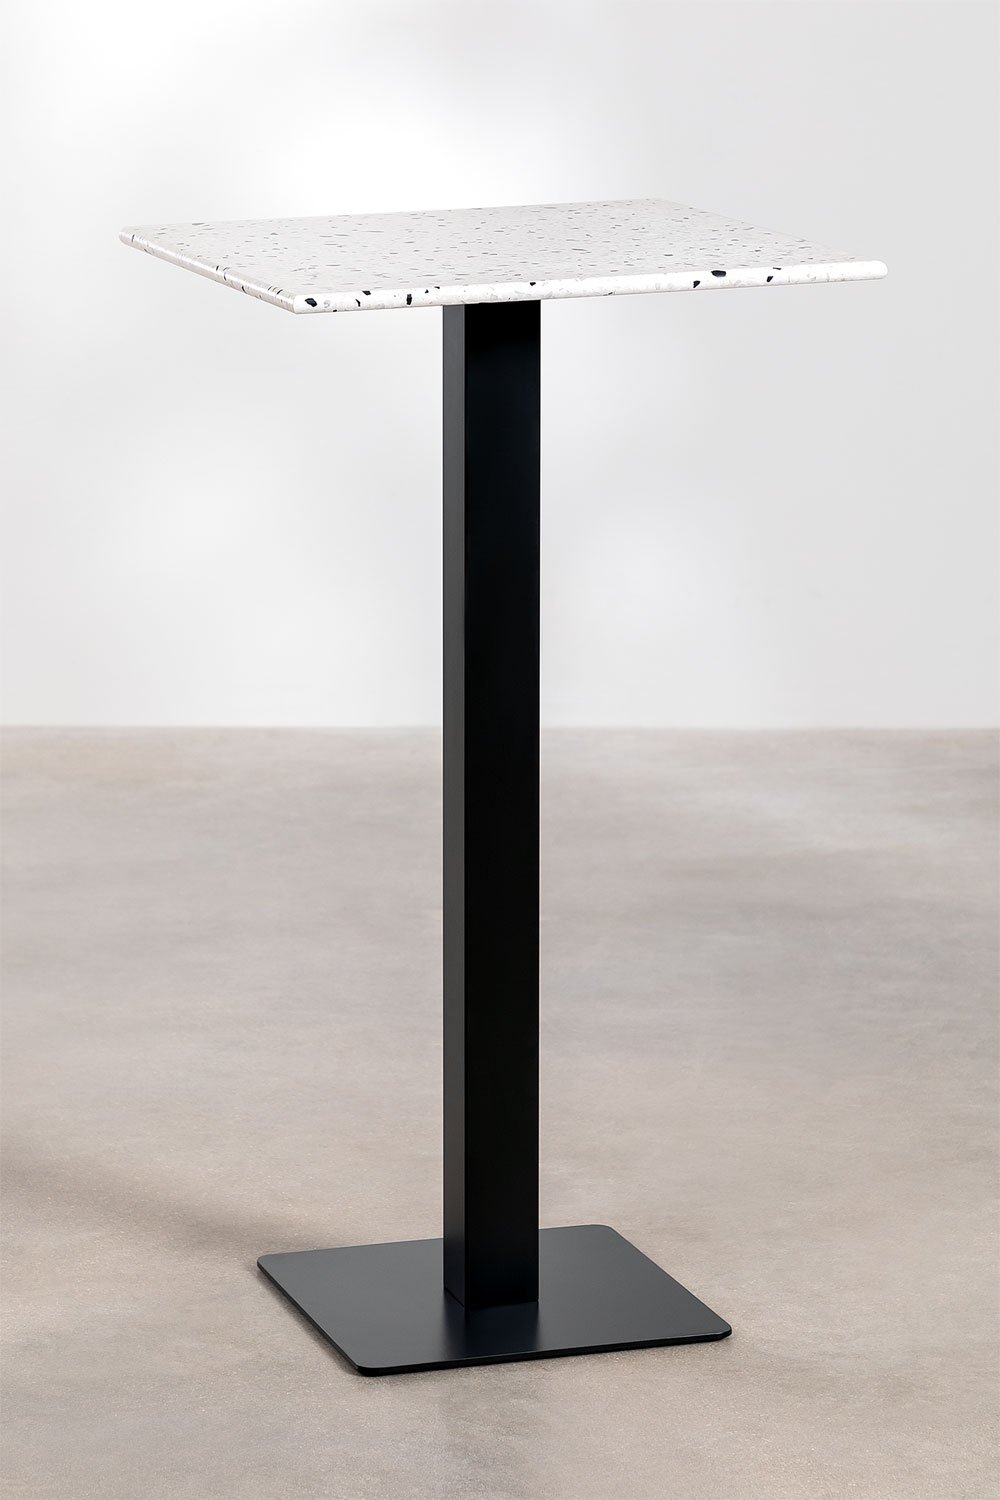 Vierkante hoge bartafel in terrazzo (60x60 cm) Praline, galerij beeld 1